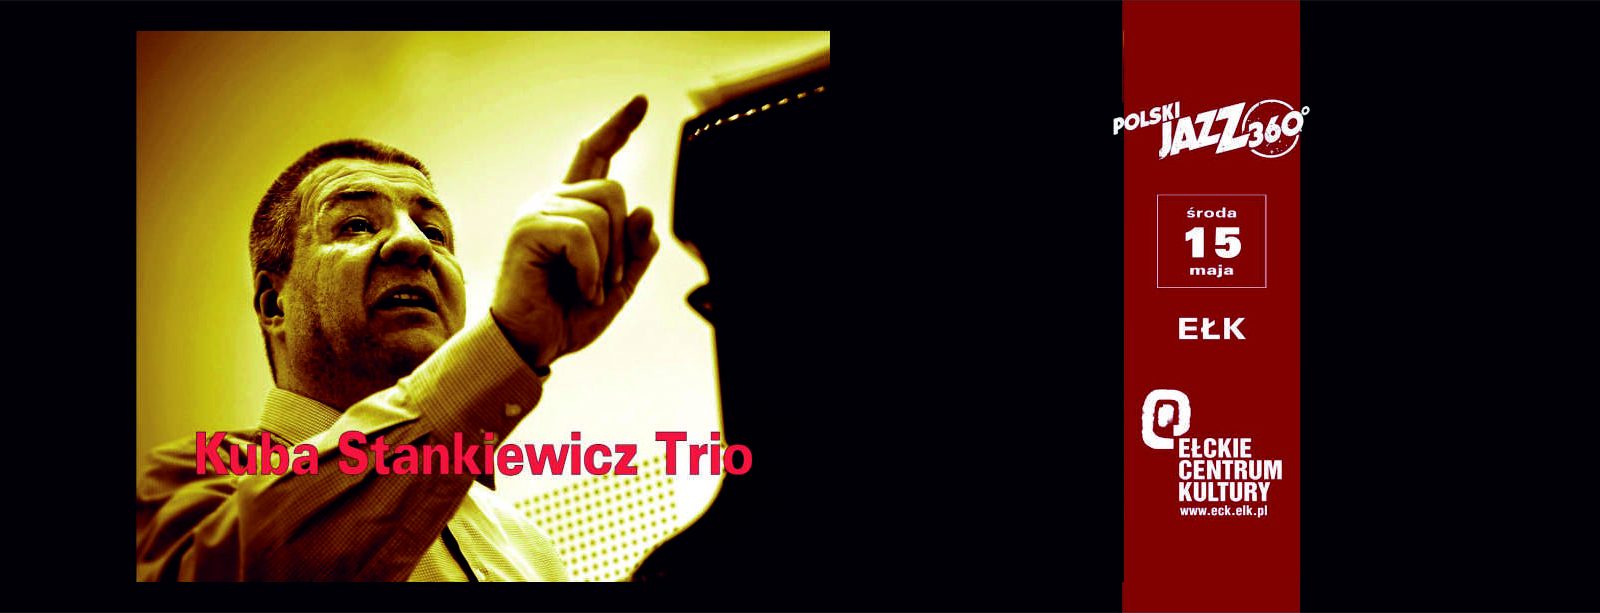 Kuba Stankiewicz Trio Polski Jazz 360° 